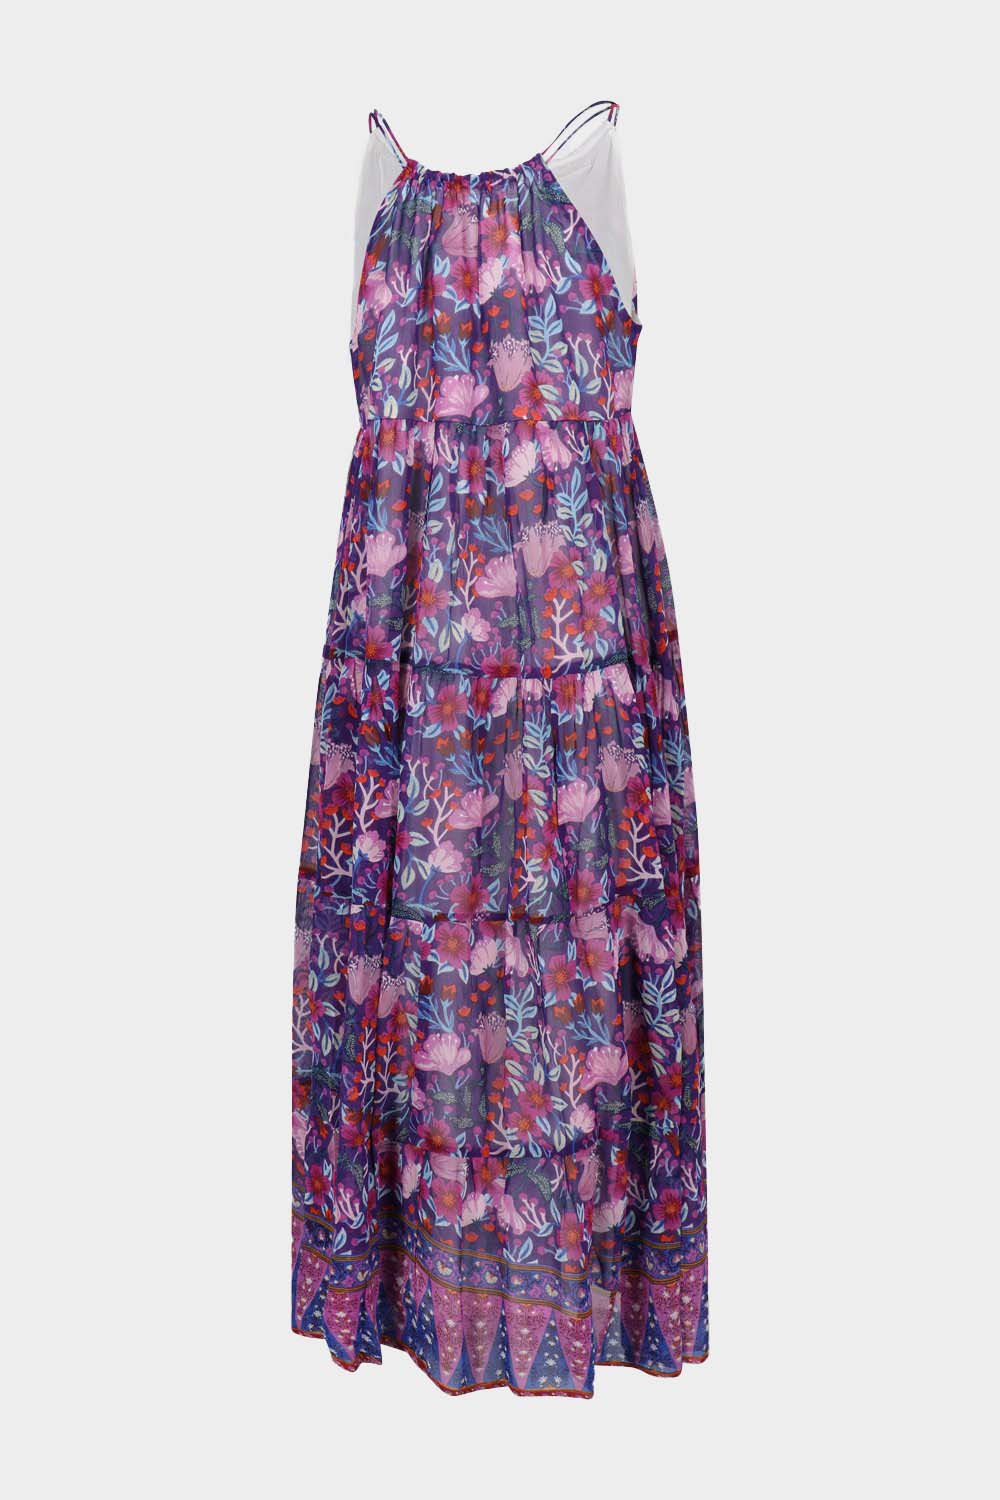 שמלת SANSONNET לנשים הדפס פרחוני RENE DERHY Vendome online | ונדום .